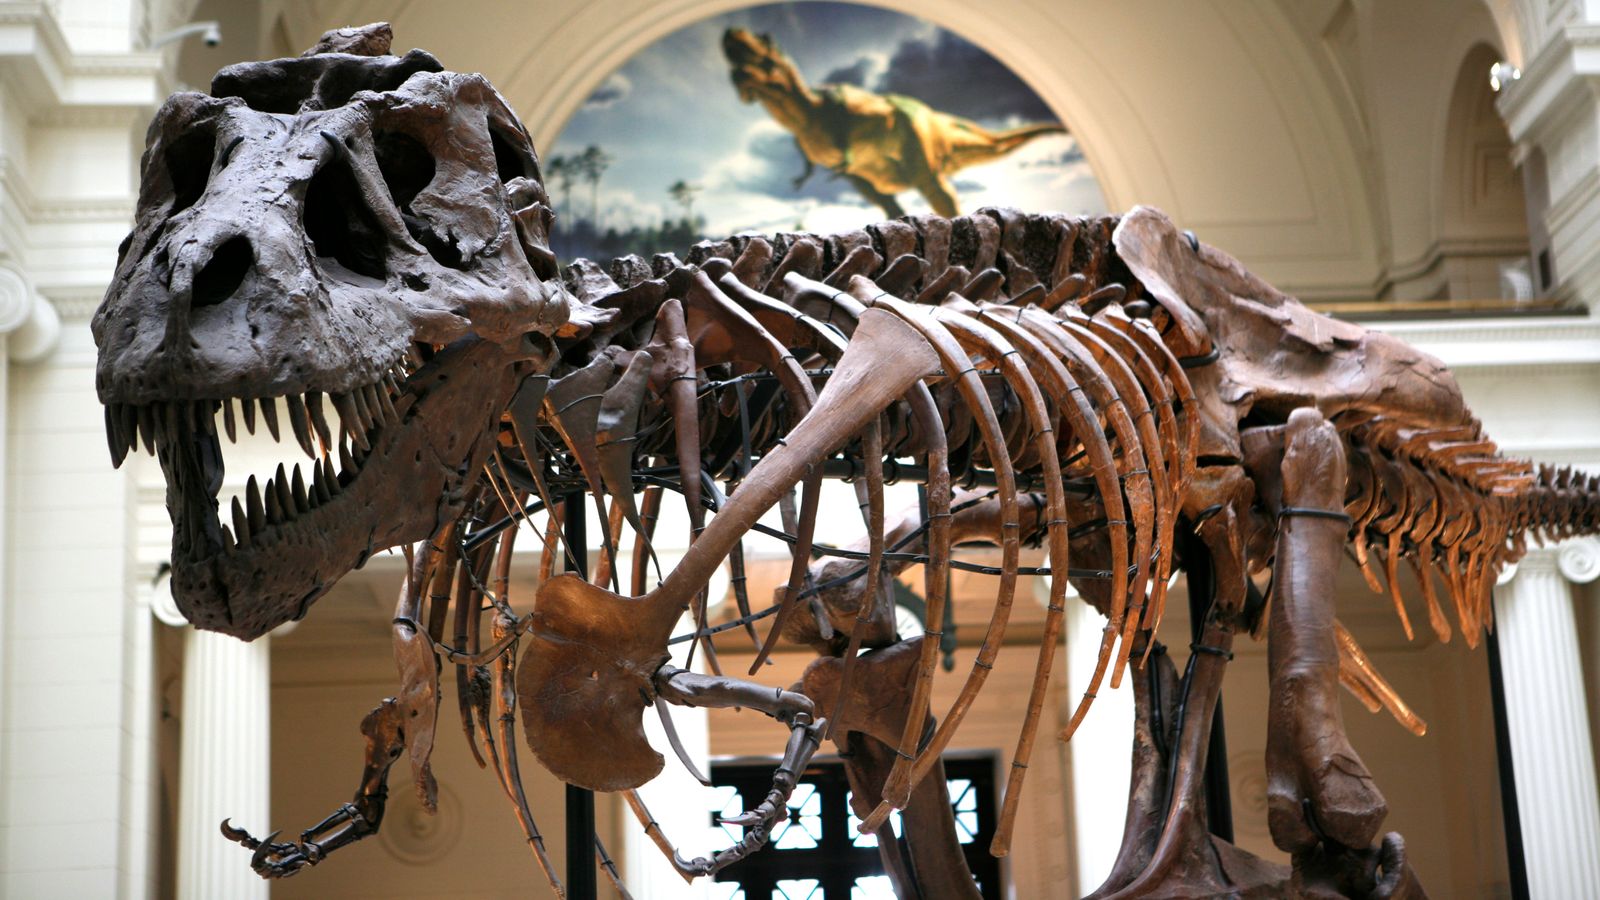 Черепите на тийнейджърите T. Rex принадлежат на различни динозаври, твърдят учени след десетилетия на дебат